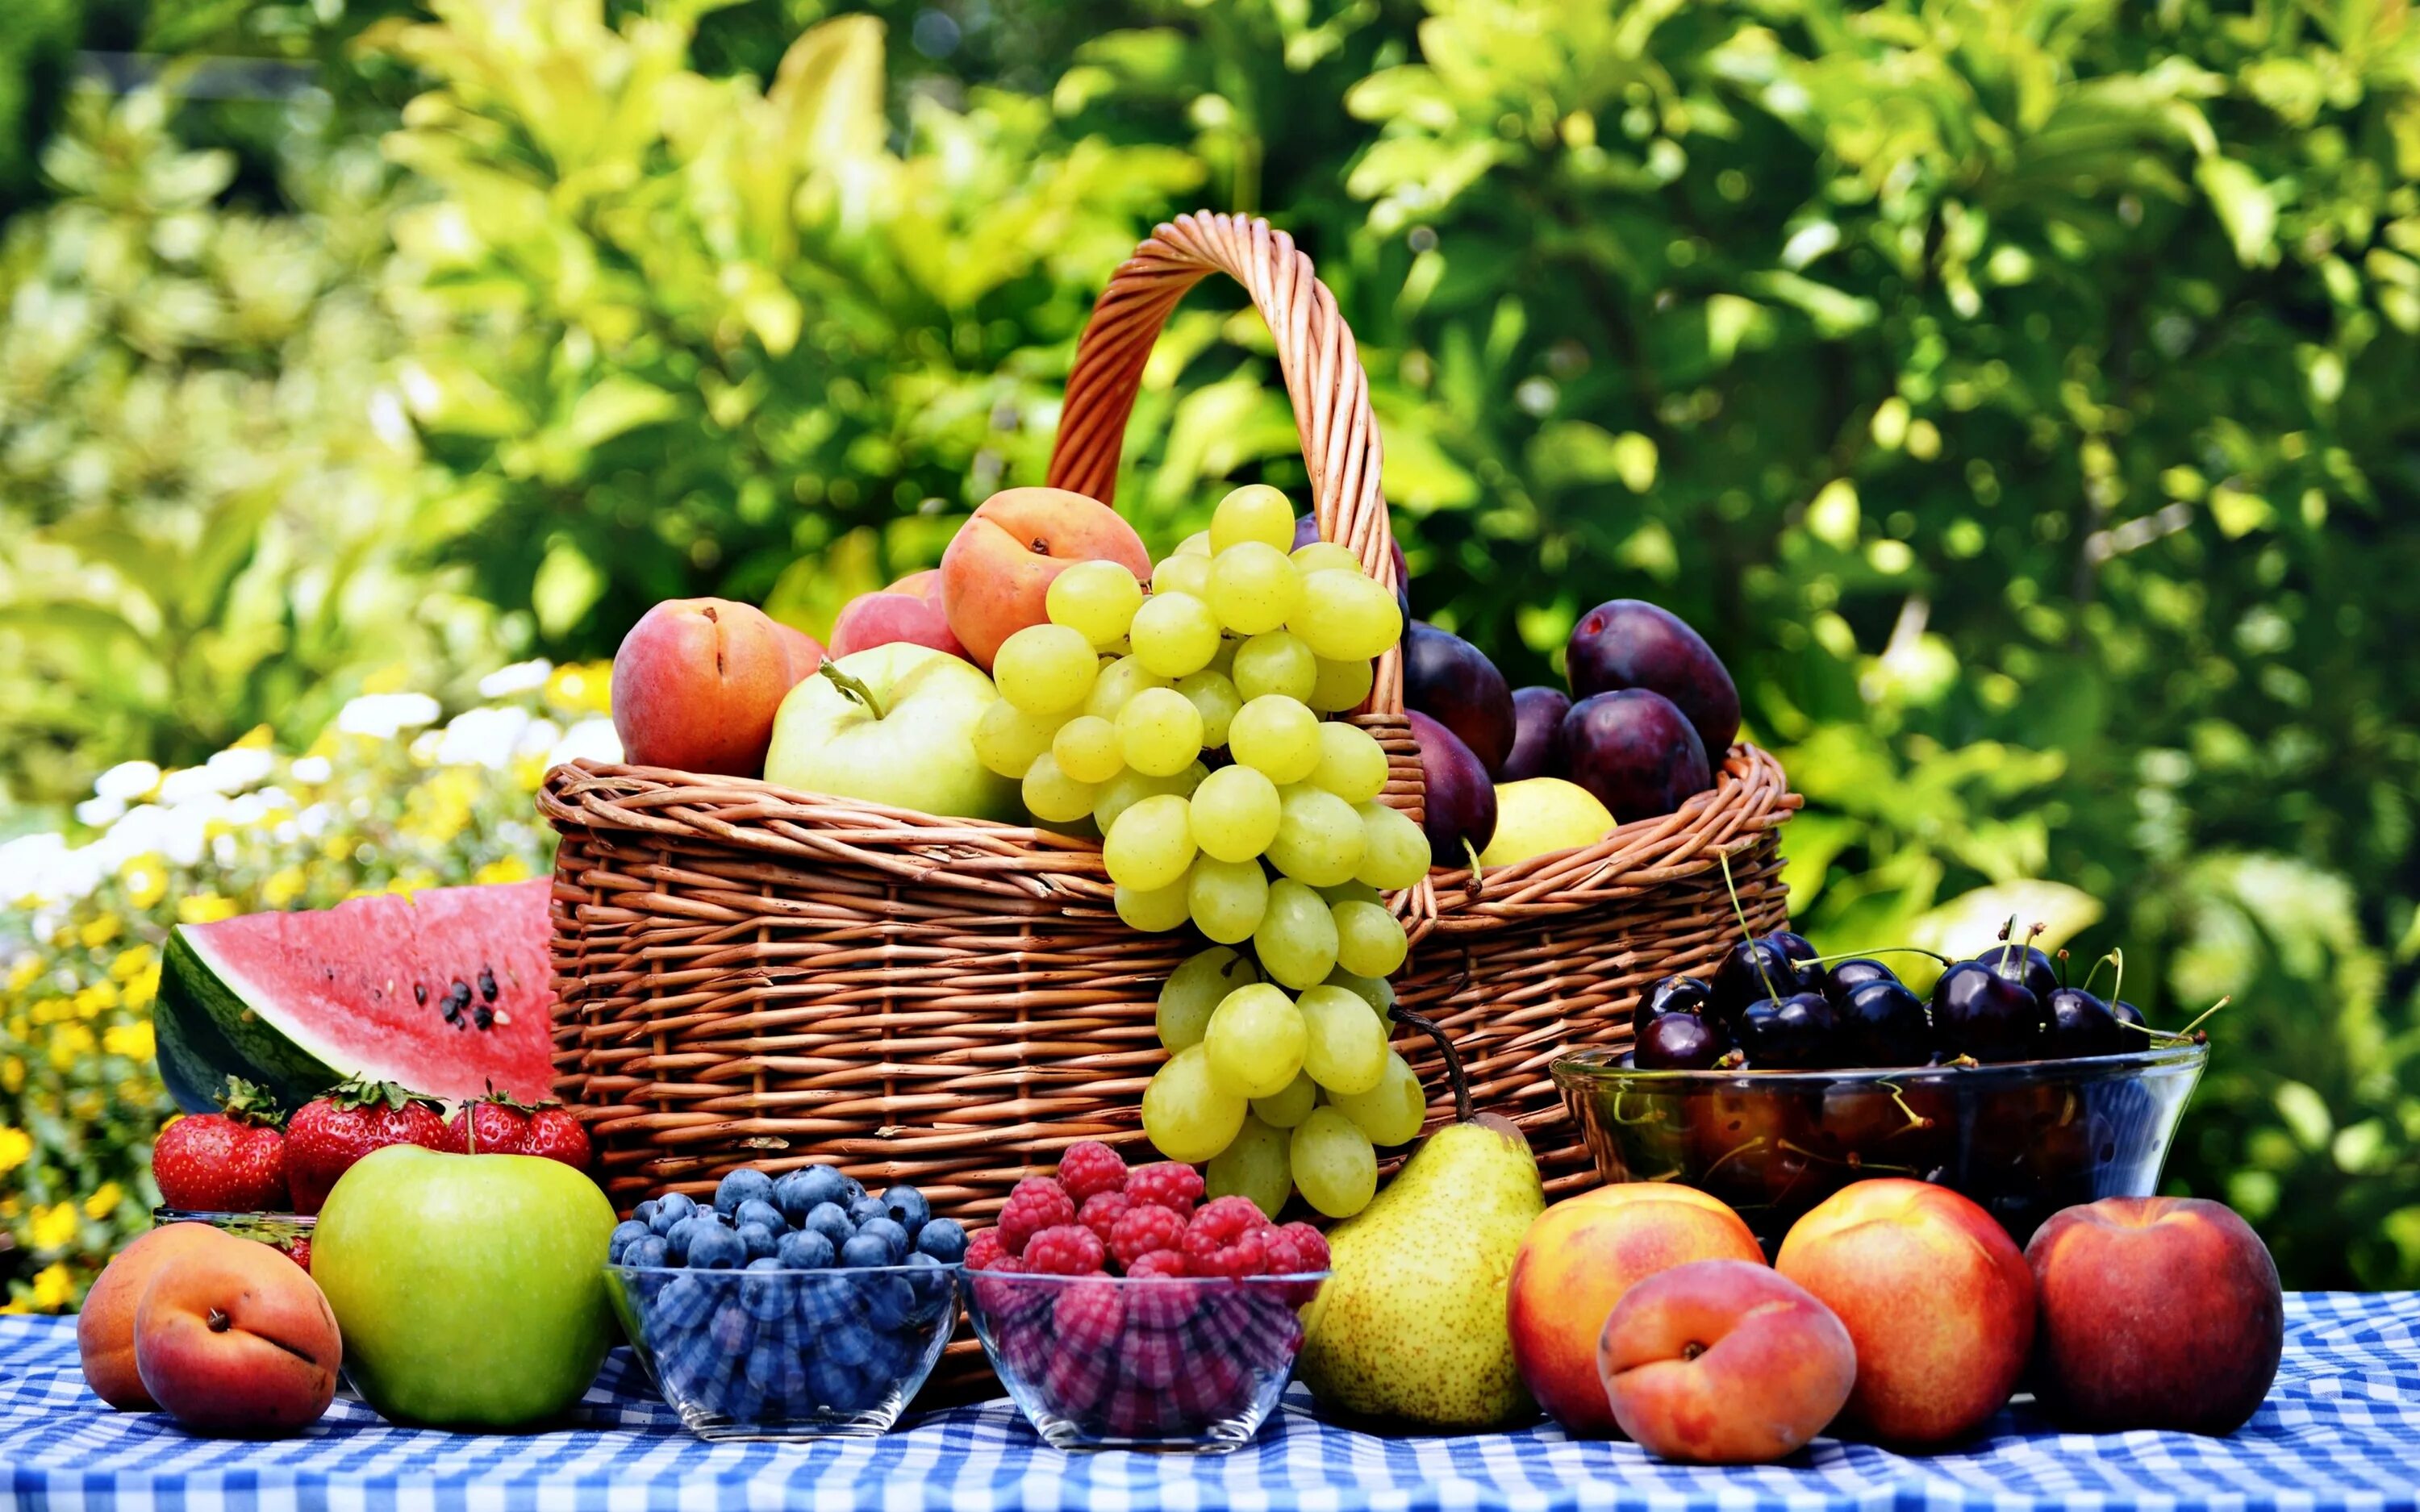 Лето время фруктов. Летние фрукты. Фрукты и ягоды. Летние овощи и фрукты. Корзинка с фруктами на природе.